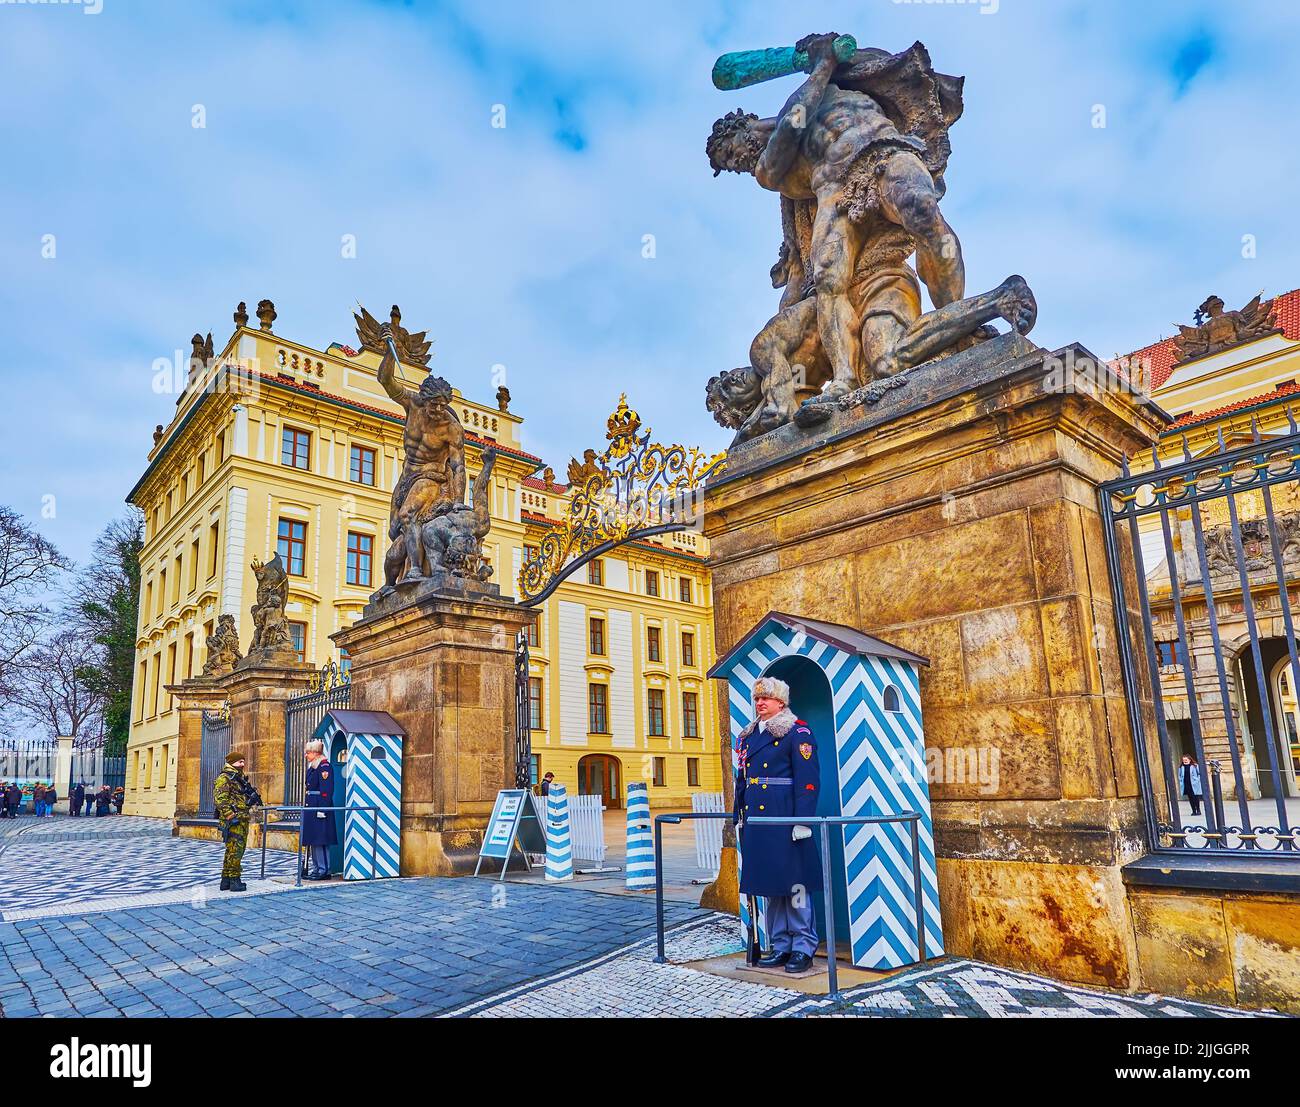 PRAGUE, République de CAZECH - 6 MARS 2022 : la porte d'entrée en pierre sculptée du château de Prague, située sur la place du château et décorée de la ggia de combat Banque D'Images